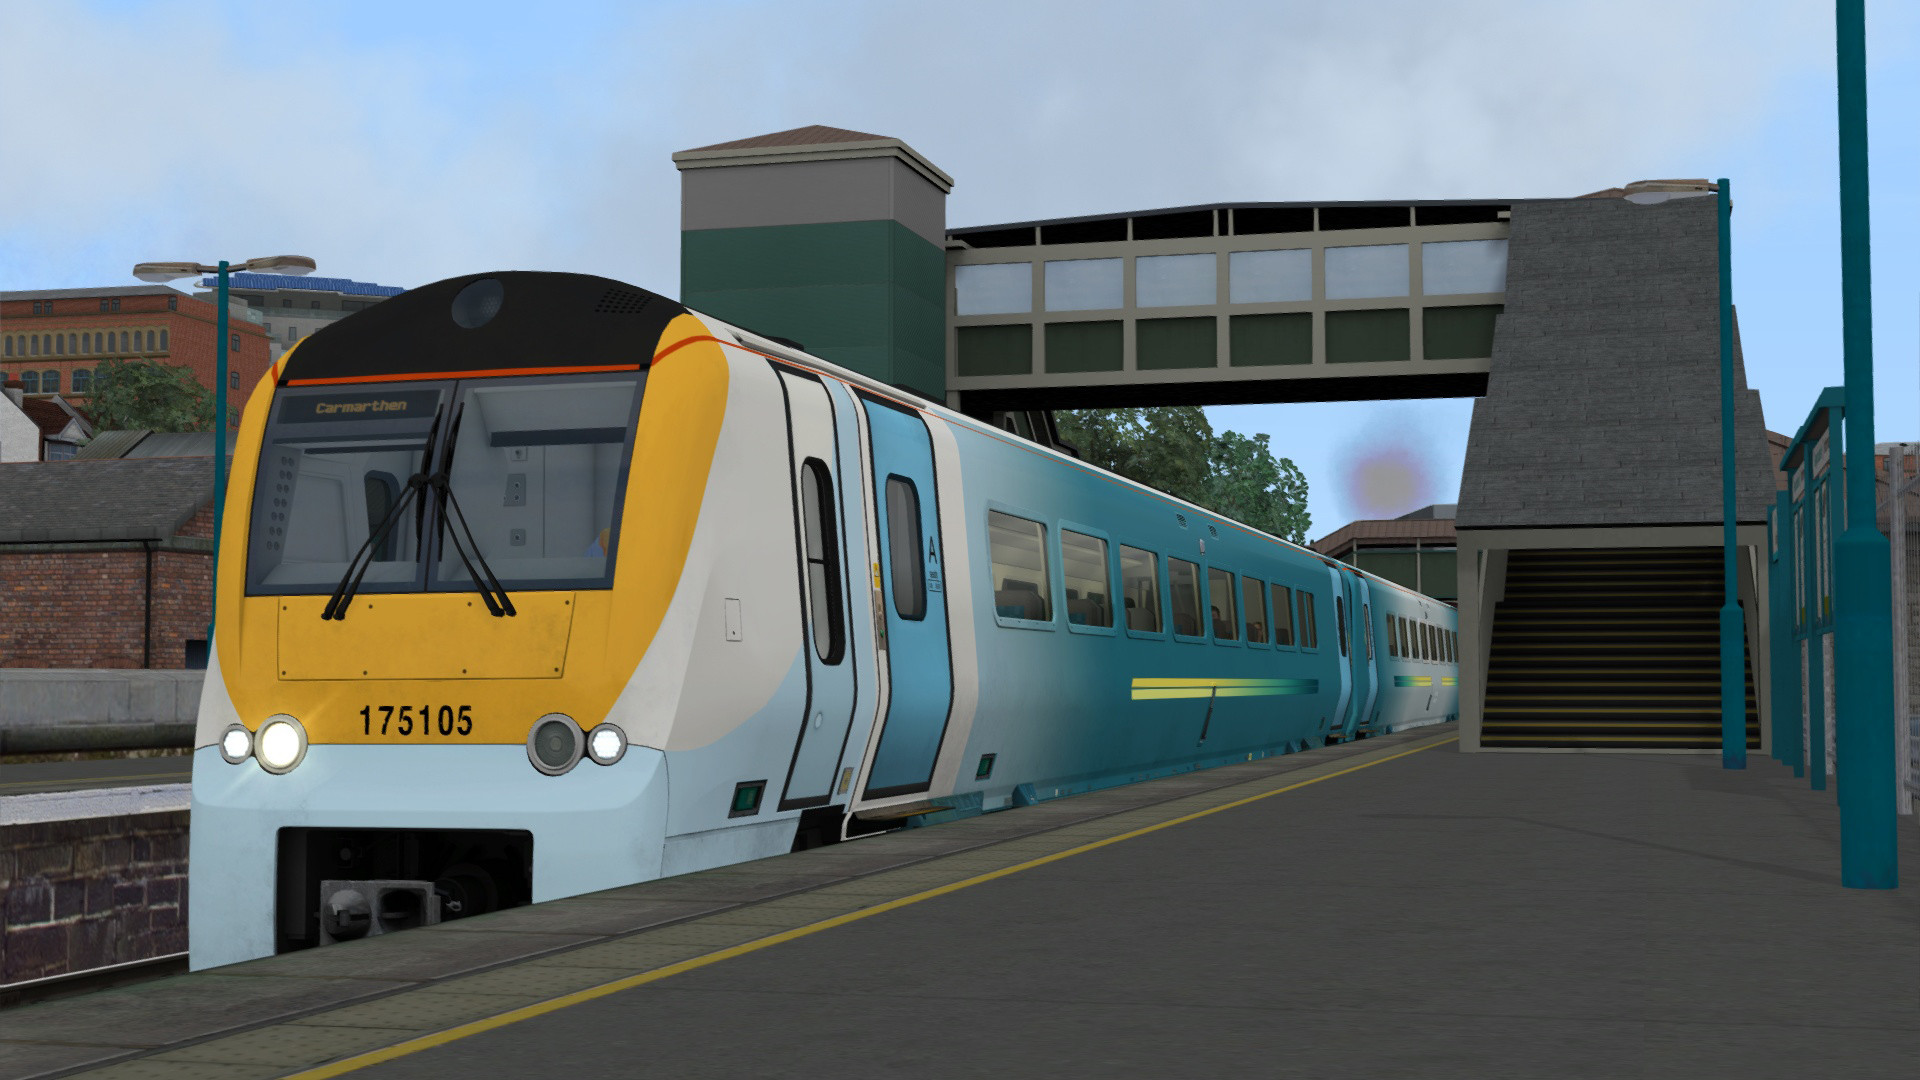 Train Simulator - South Wales Coastal: Bristol - Swansea Route Add-on DLC Steam CD Key, 4.17 usd